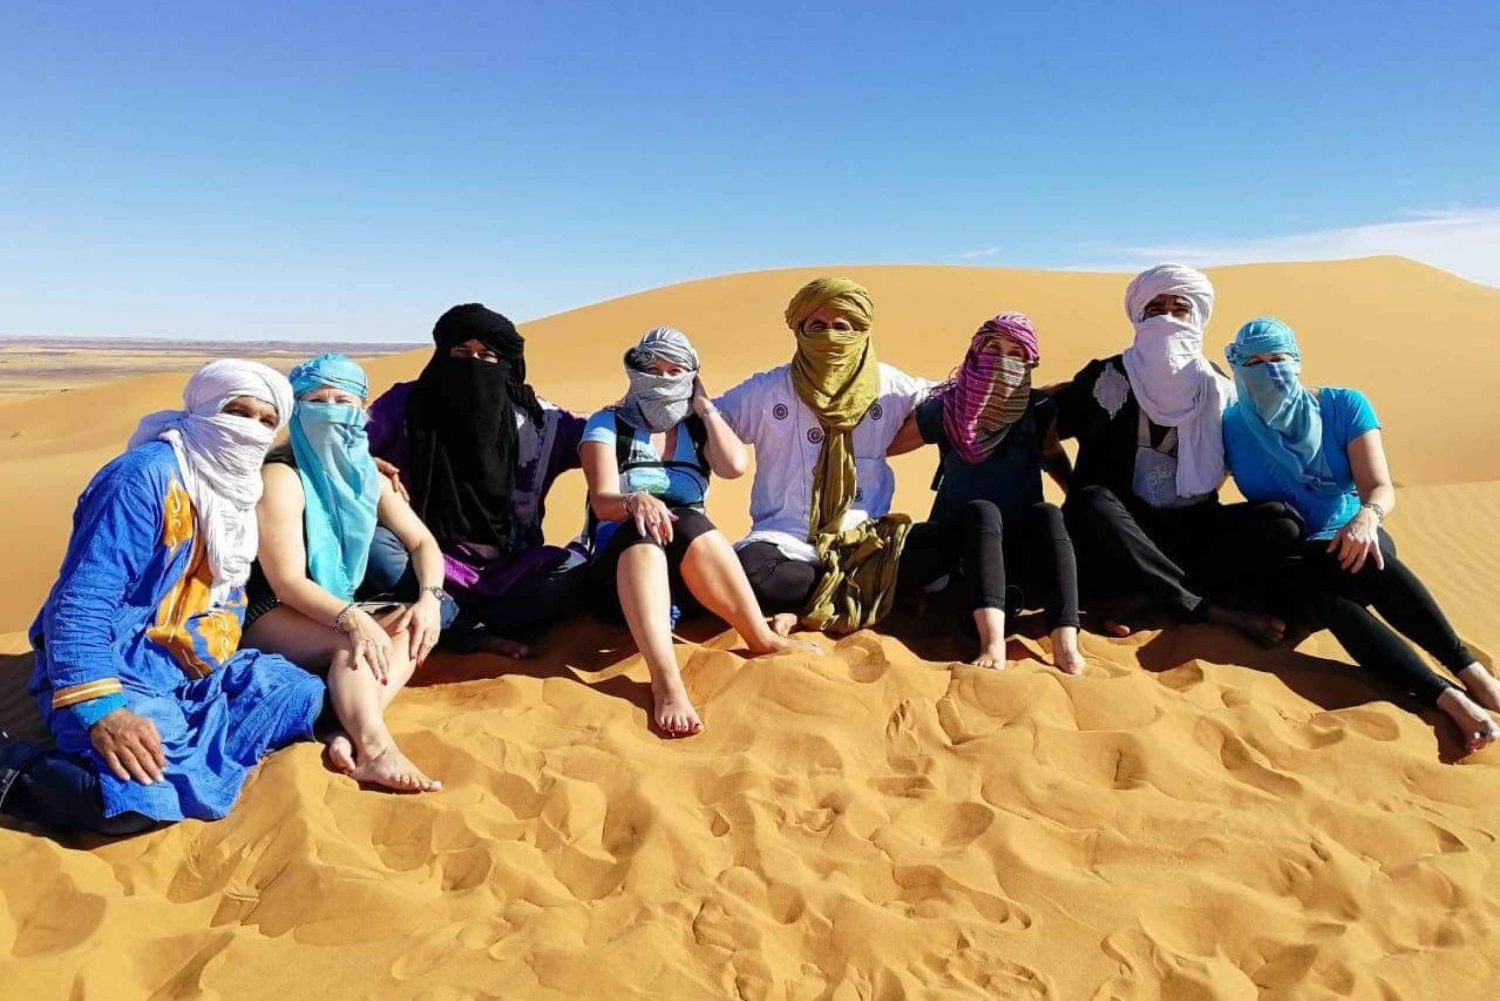 Von Marrakech aus: 2-tägiges Zagoura Wüstencamp mit Kamelritt